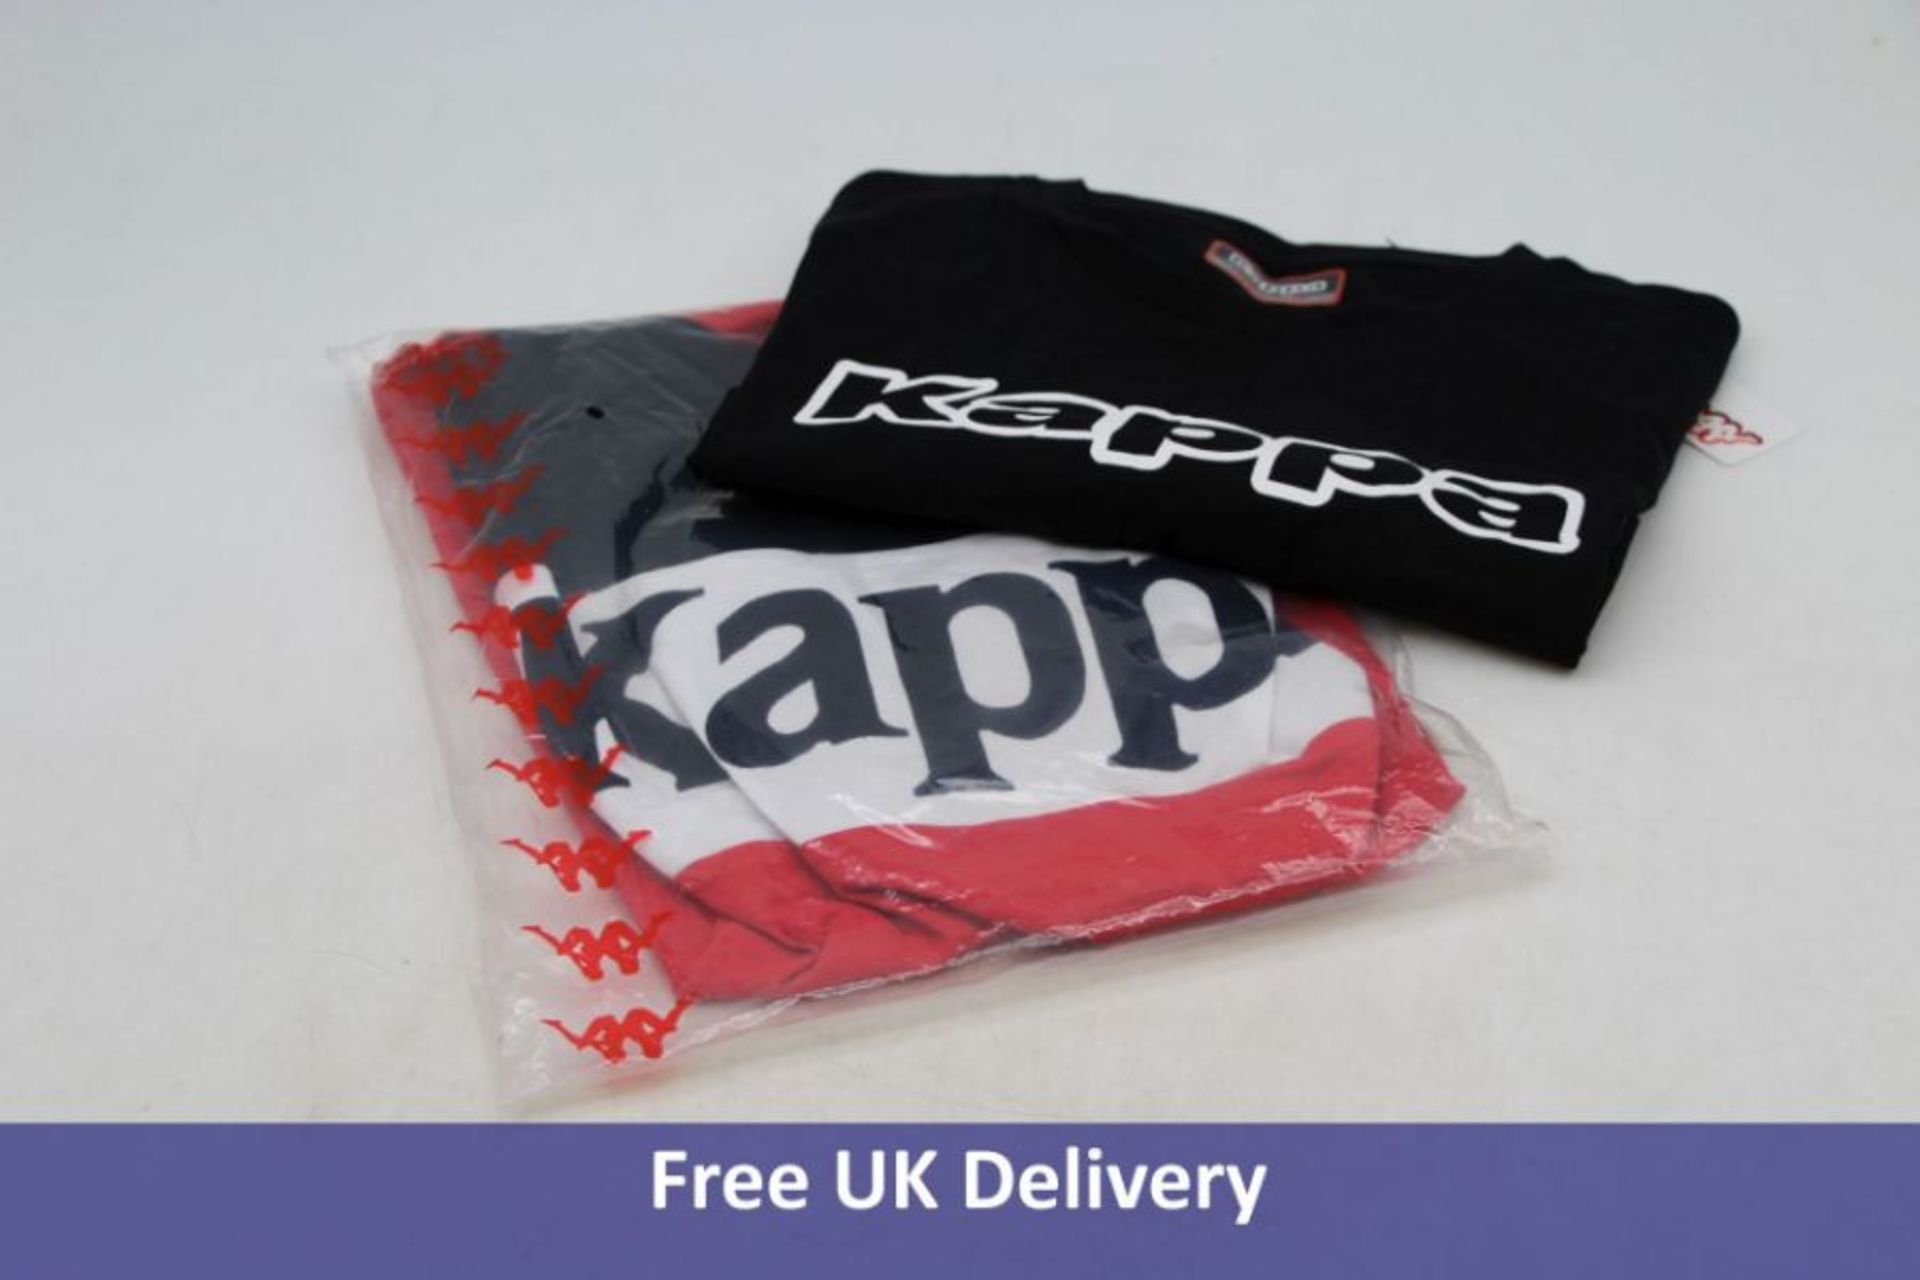 Two Kappa Men's Basic T-Shirt, Navy/Red, UK M